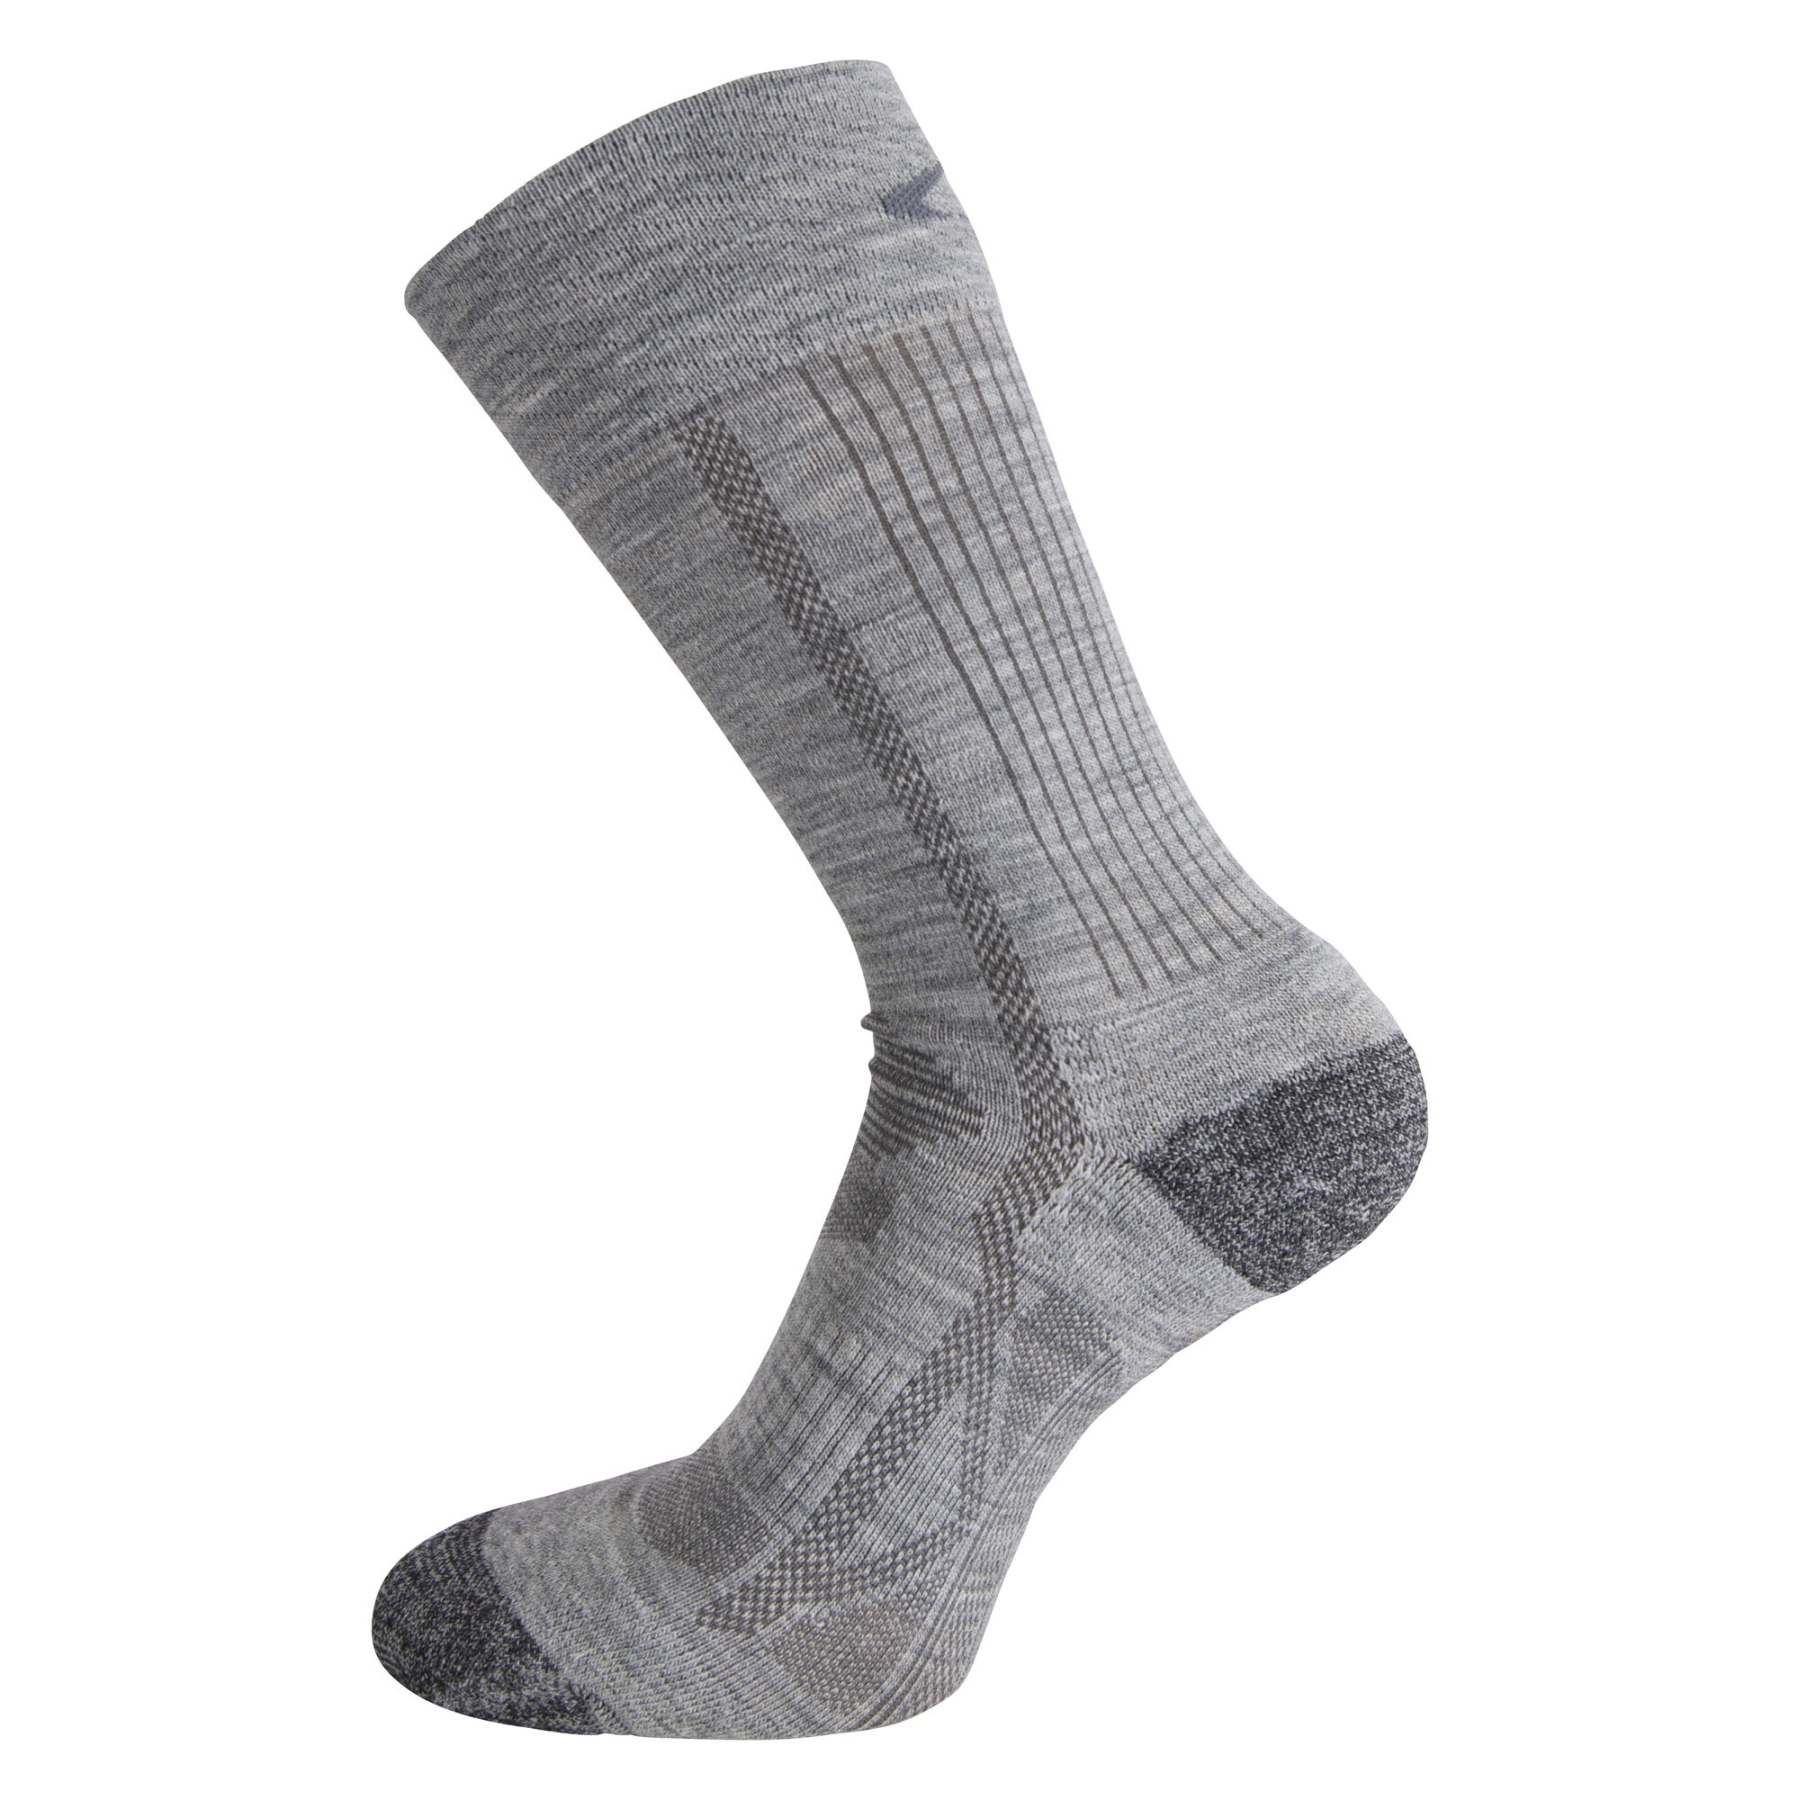 Productfoto van Ulvang Outdoor Sokken - Set van 2 - Black/Charcoal Melange